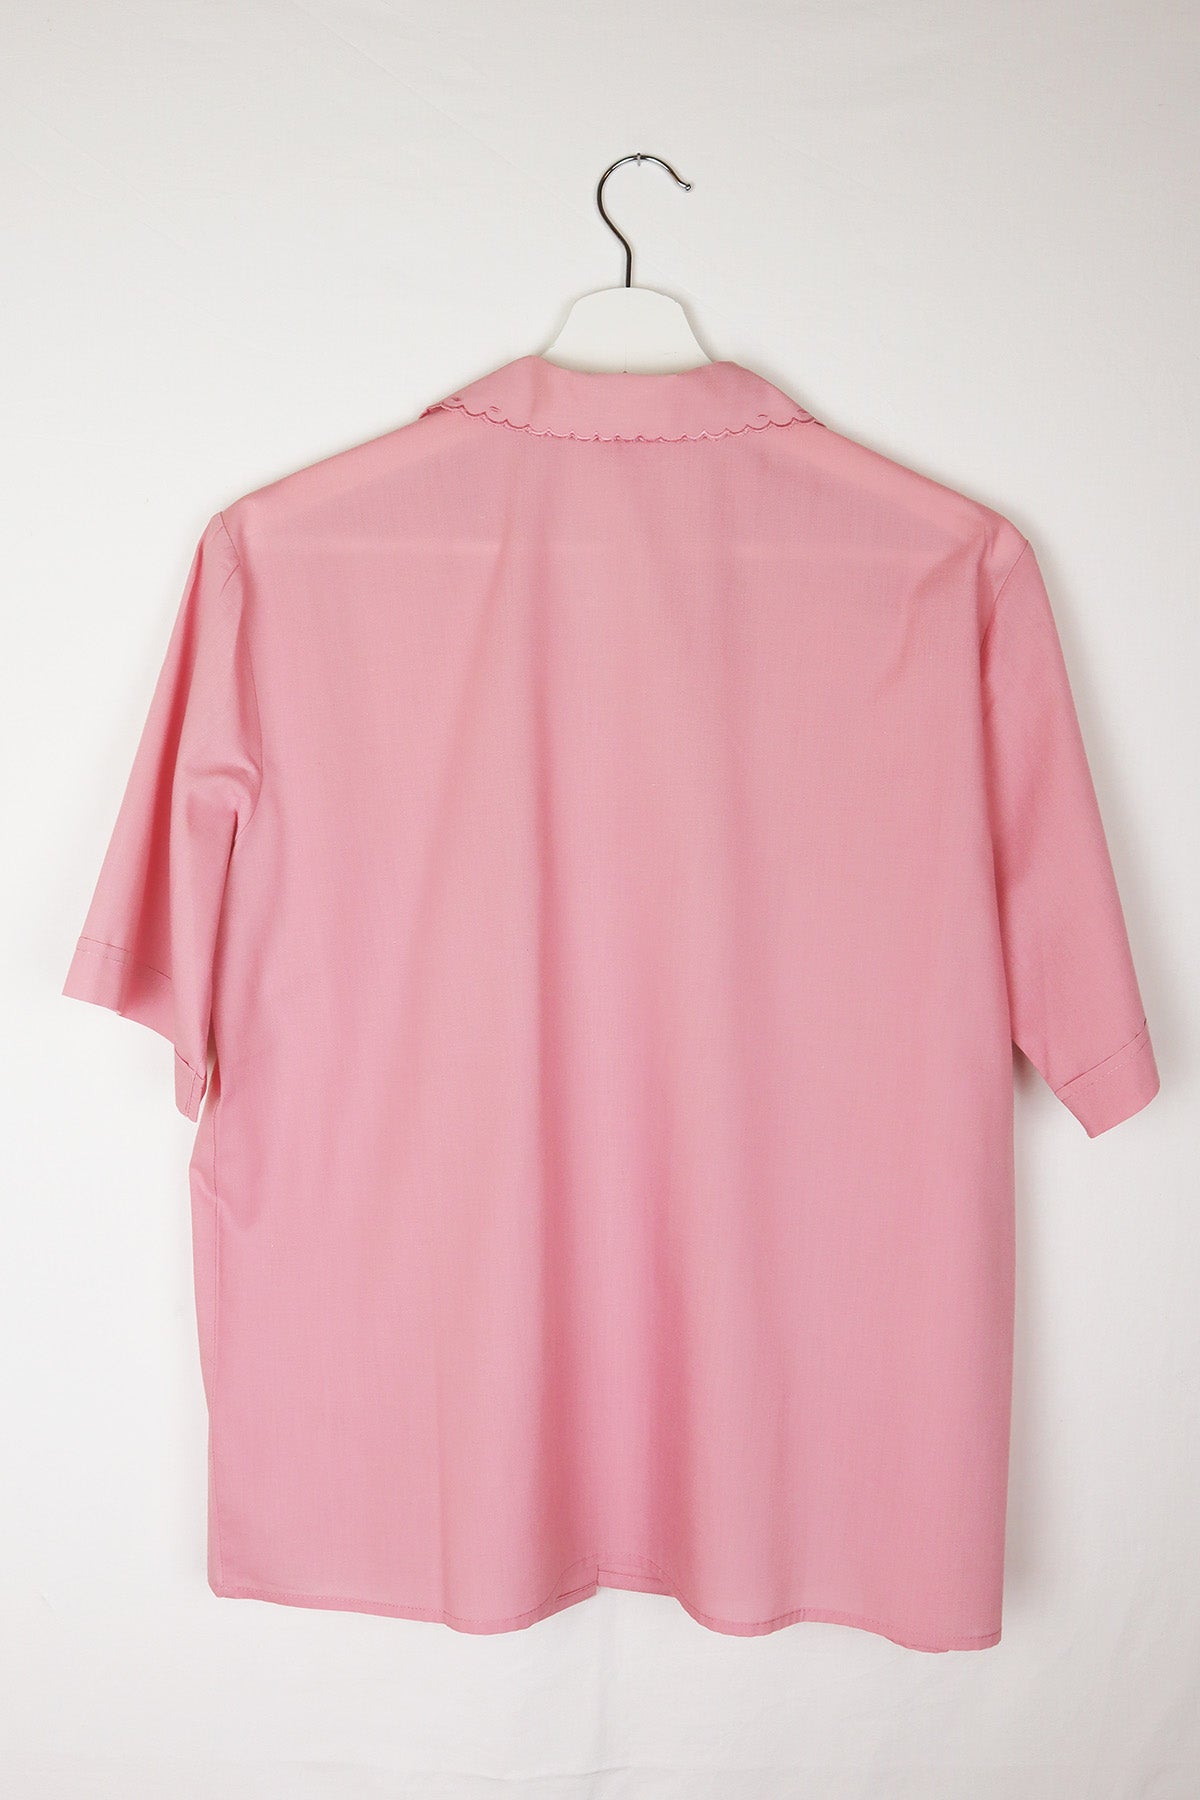 Bluse Vintage Rosa Kragen Bogenkante ( Gr. M-XL )